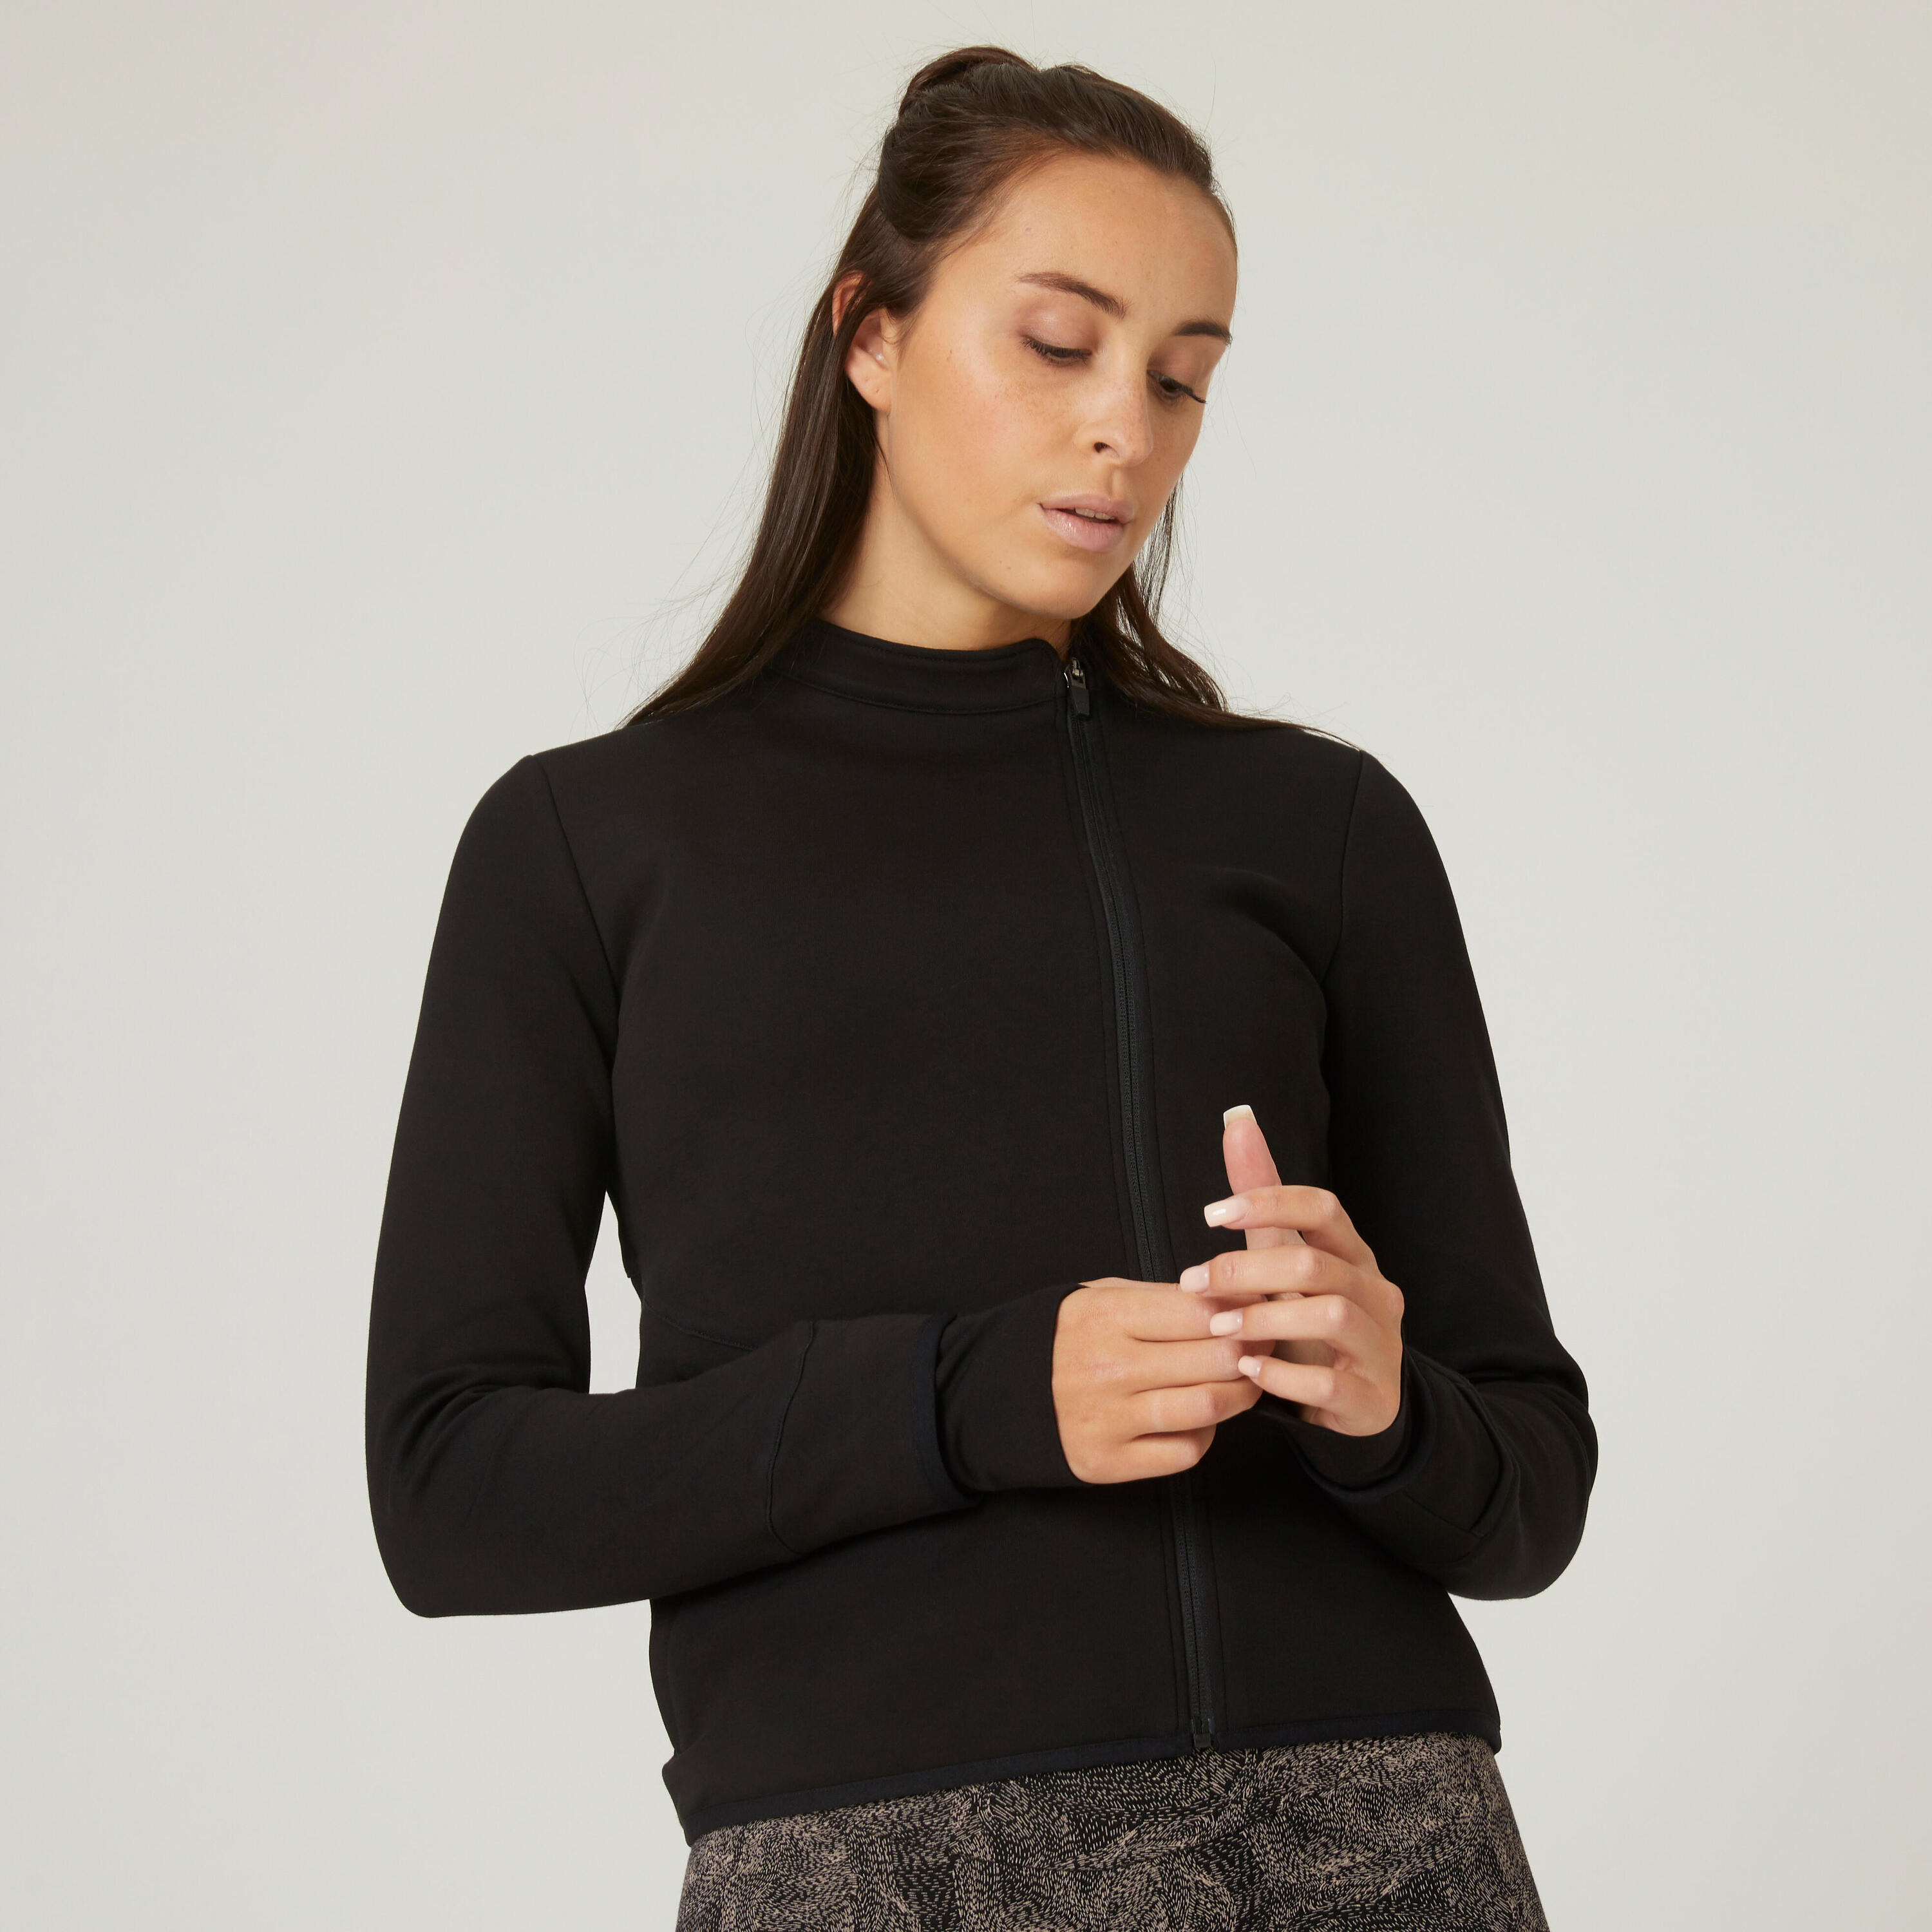 Women's Fitness Zip Sweatshirt 500 - Spacer Black 1/9